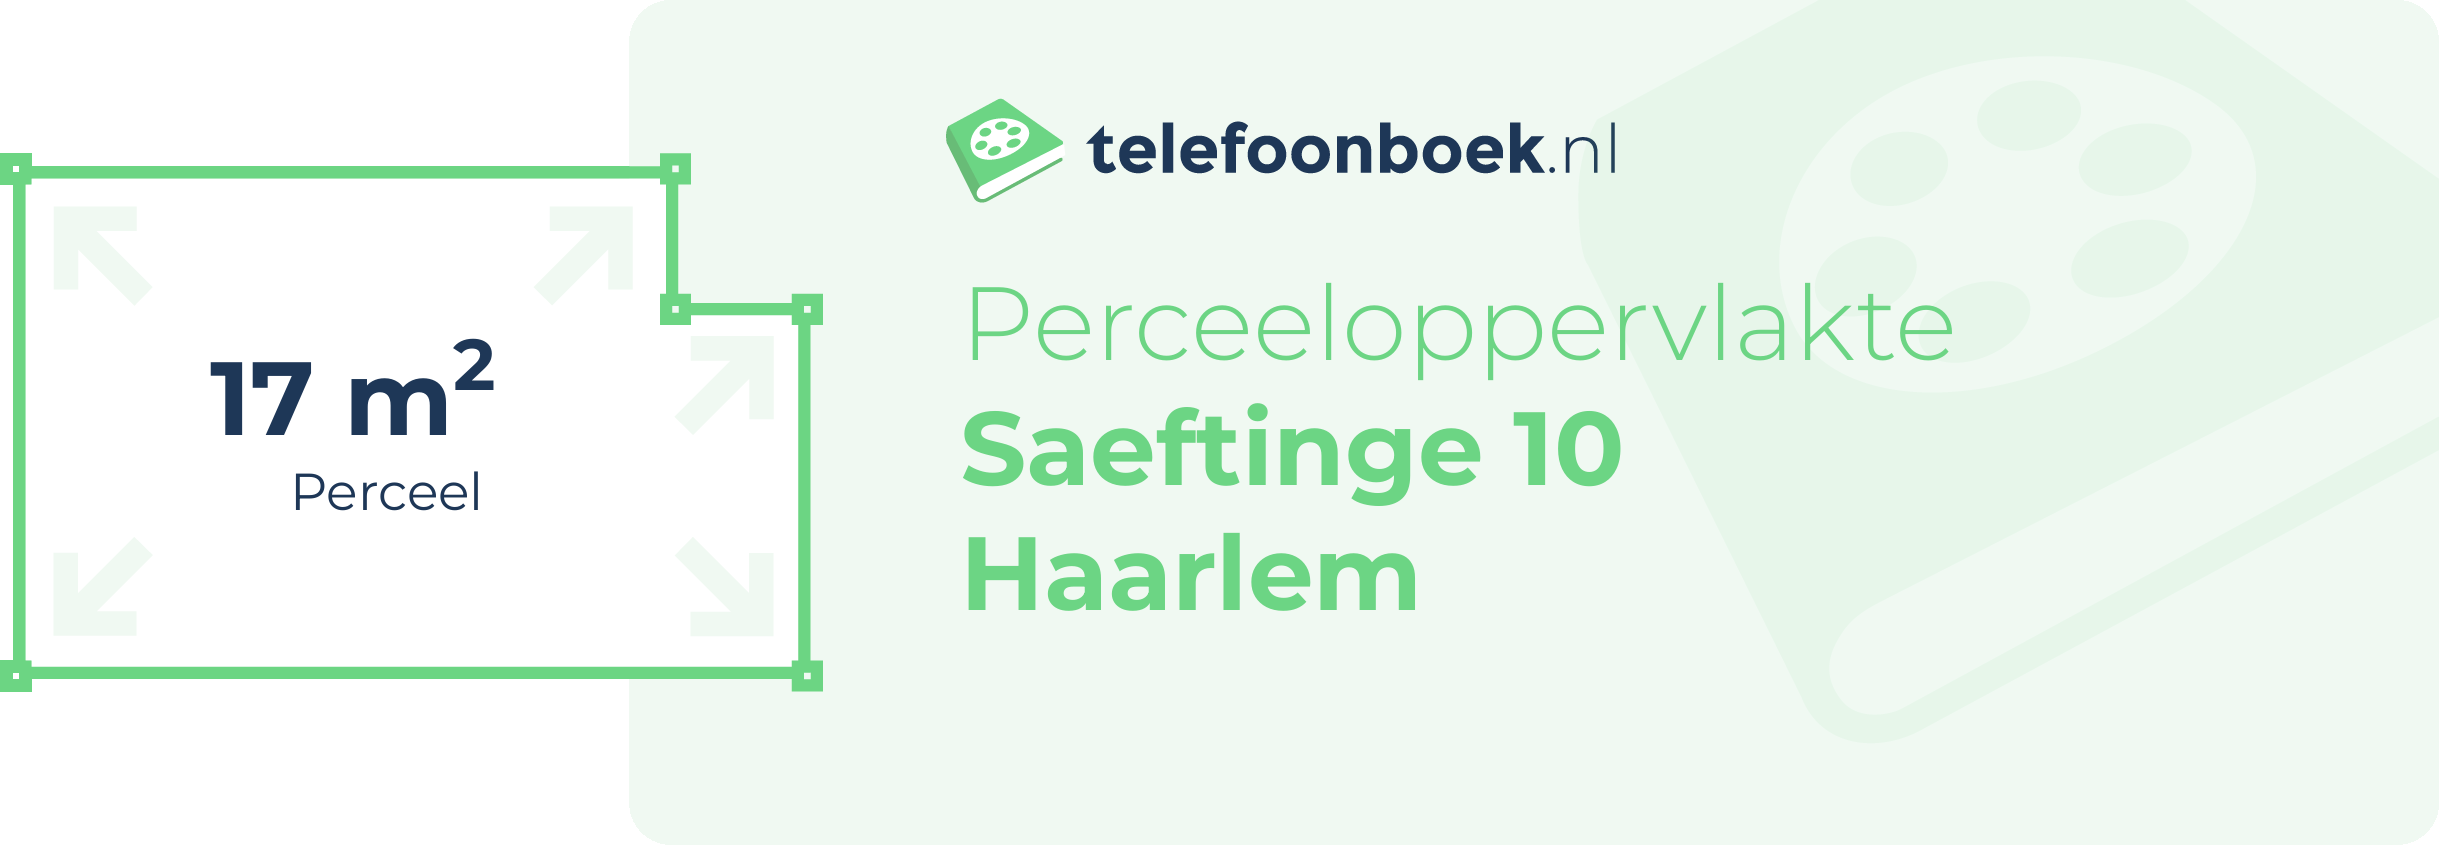 Perceeloppervlakte Saeftinge 10 Haarlem